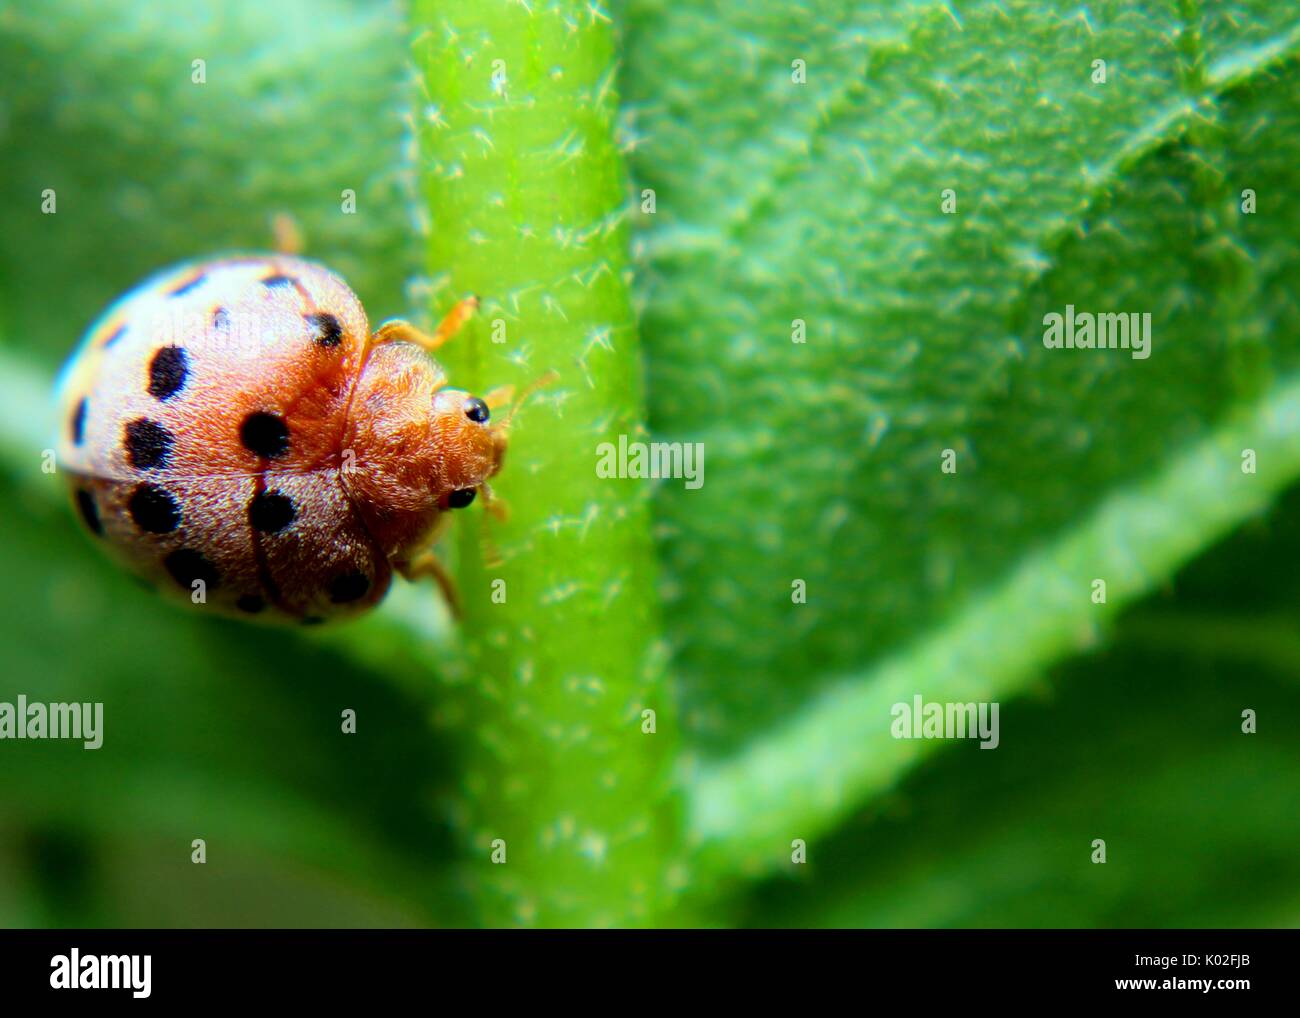 Nah-, Makro Blick auf eine kleine bunte Ladybird - Marienkäfer - coccinellidae - Insekt auf einem grünen Blatt in einem Haus Garten in Sri Lanka Stockfoto